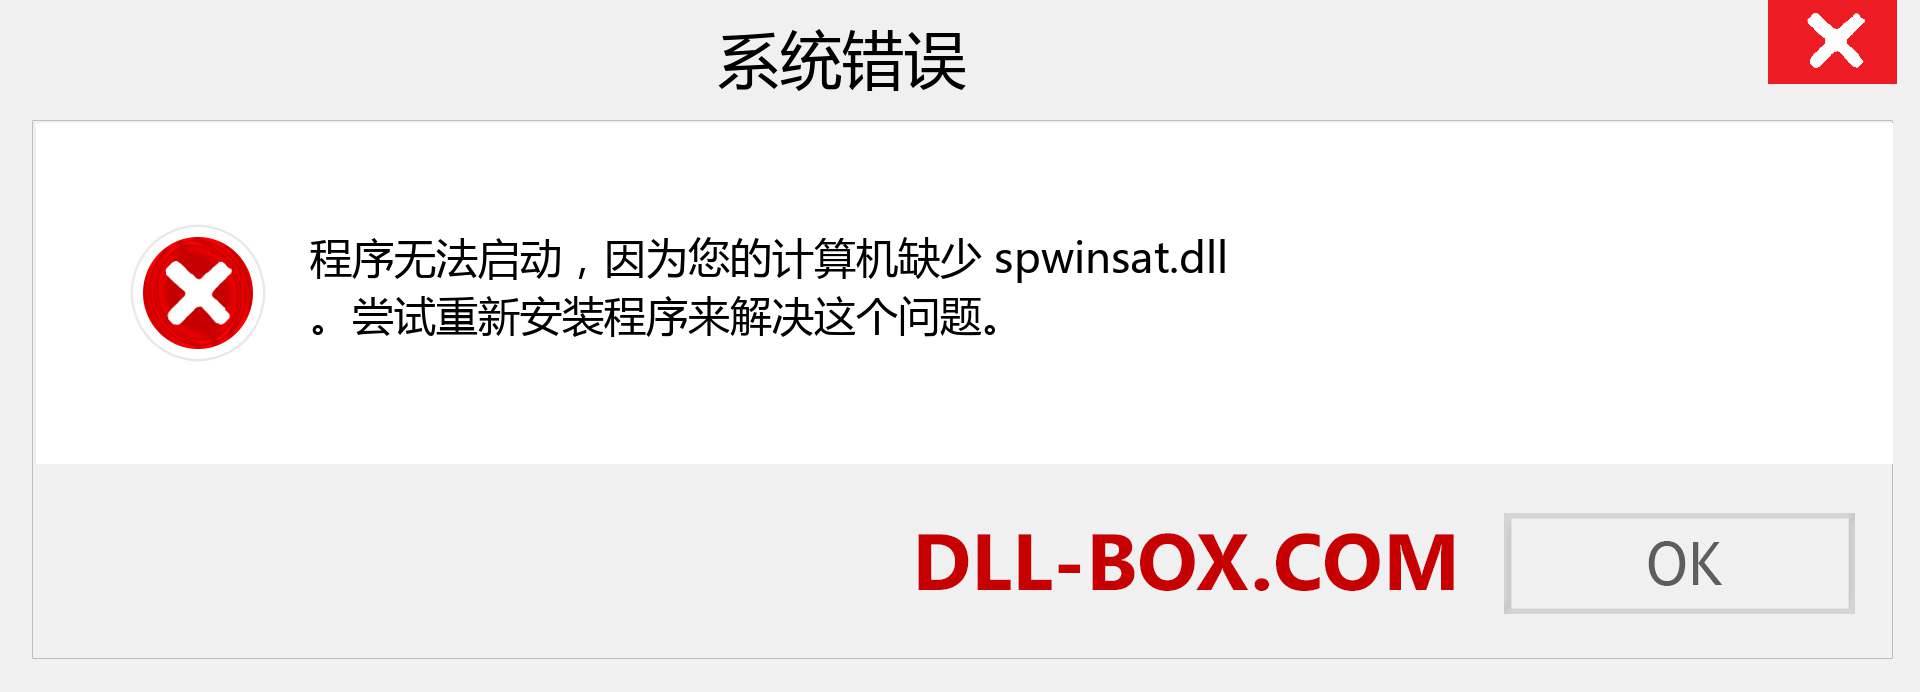 spwinsat.dll 文件丢失？。 适用于 Windows 7、8、10 的下载 - 修复 Windows、照片、图像上的 spwinsat dll 丢失错误